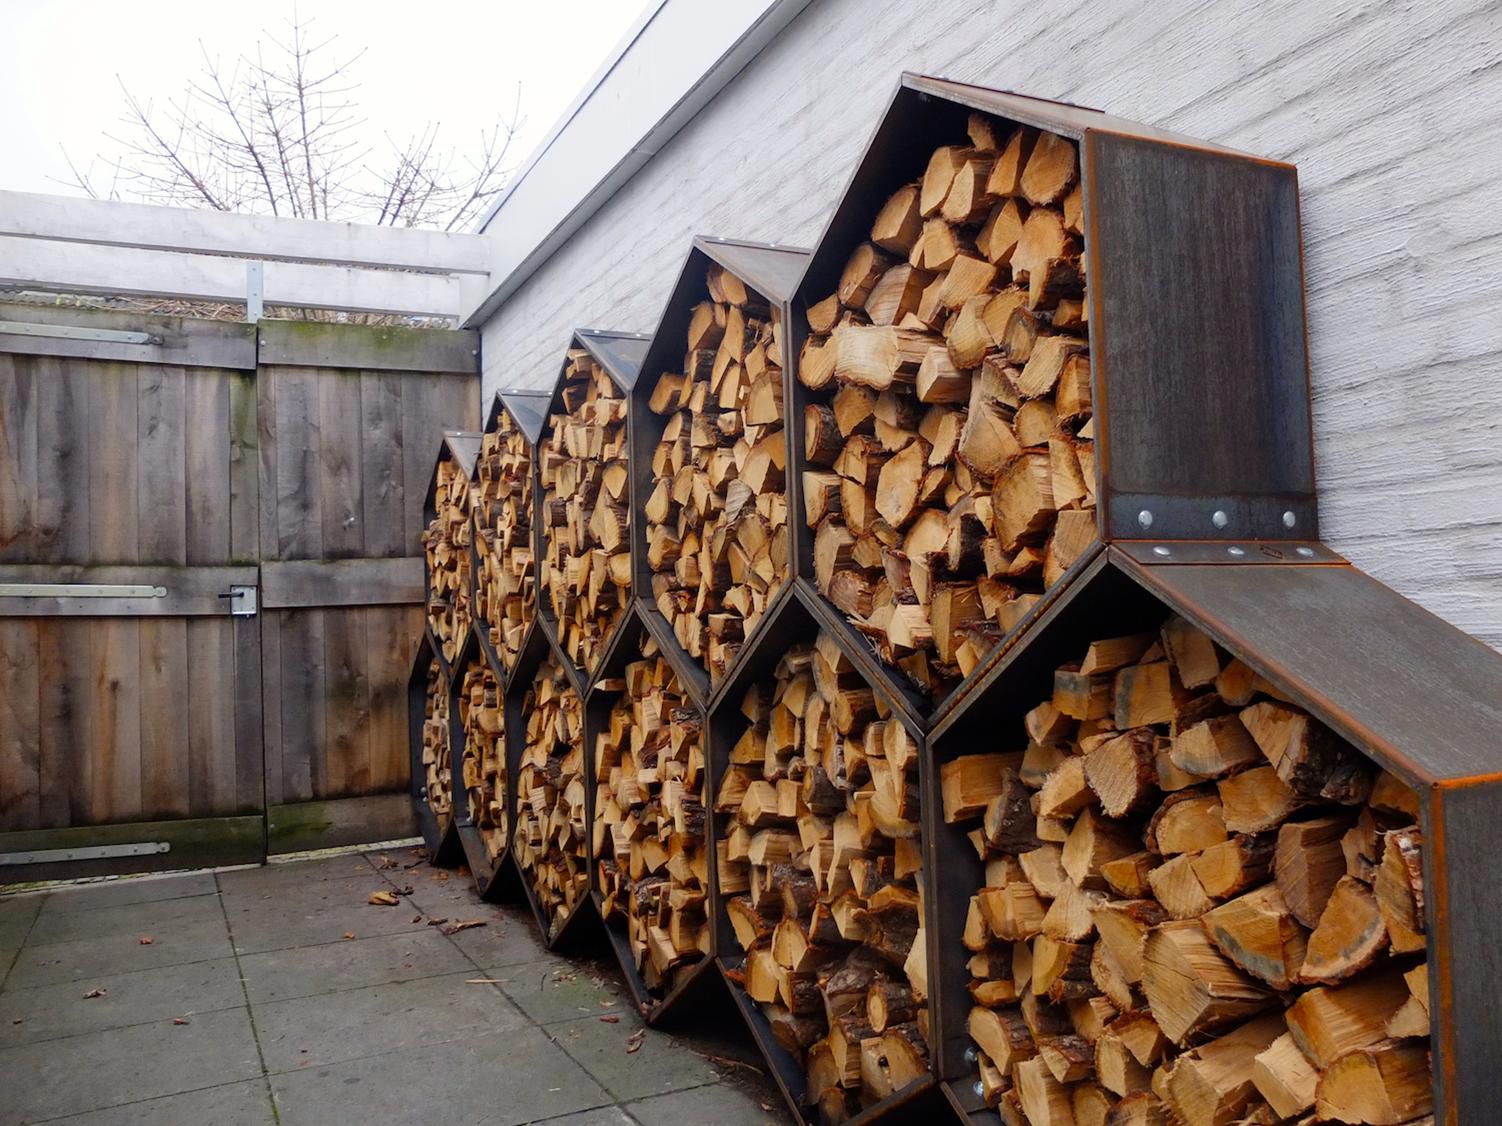  нужно хранить дрова для отопления, чтобы они легко разжигались и не .